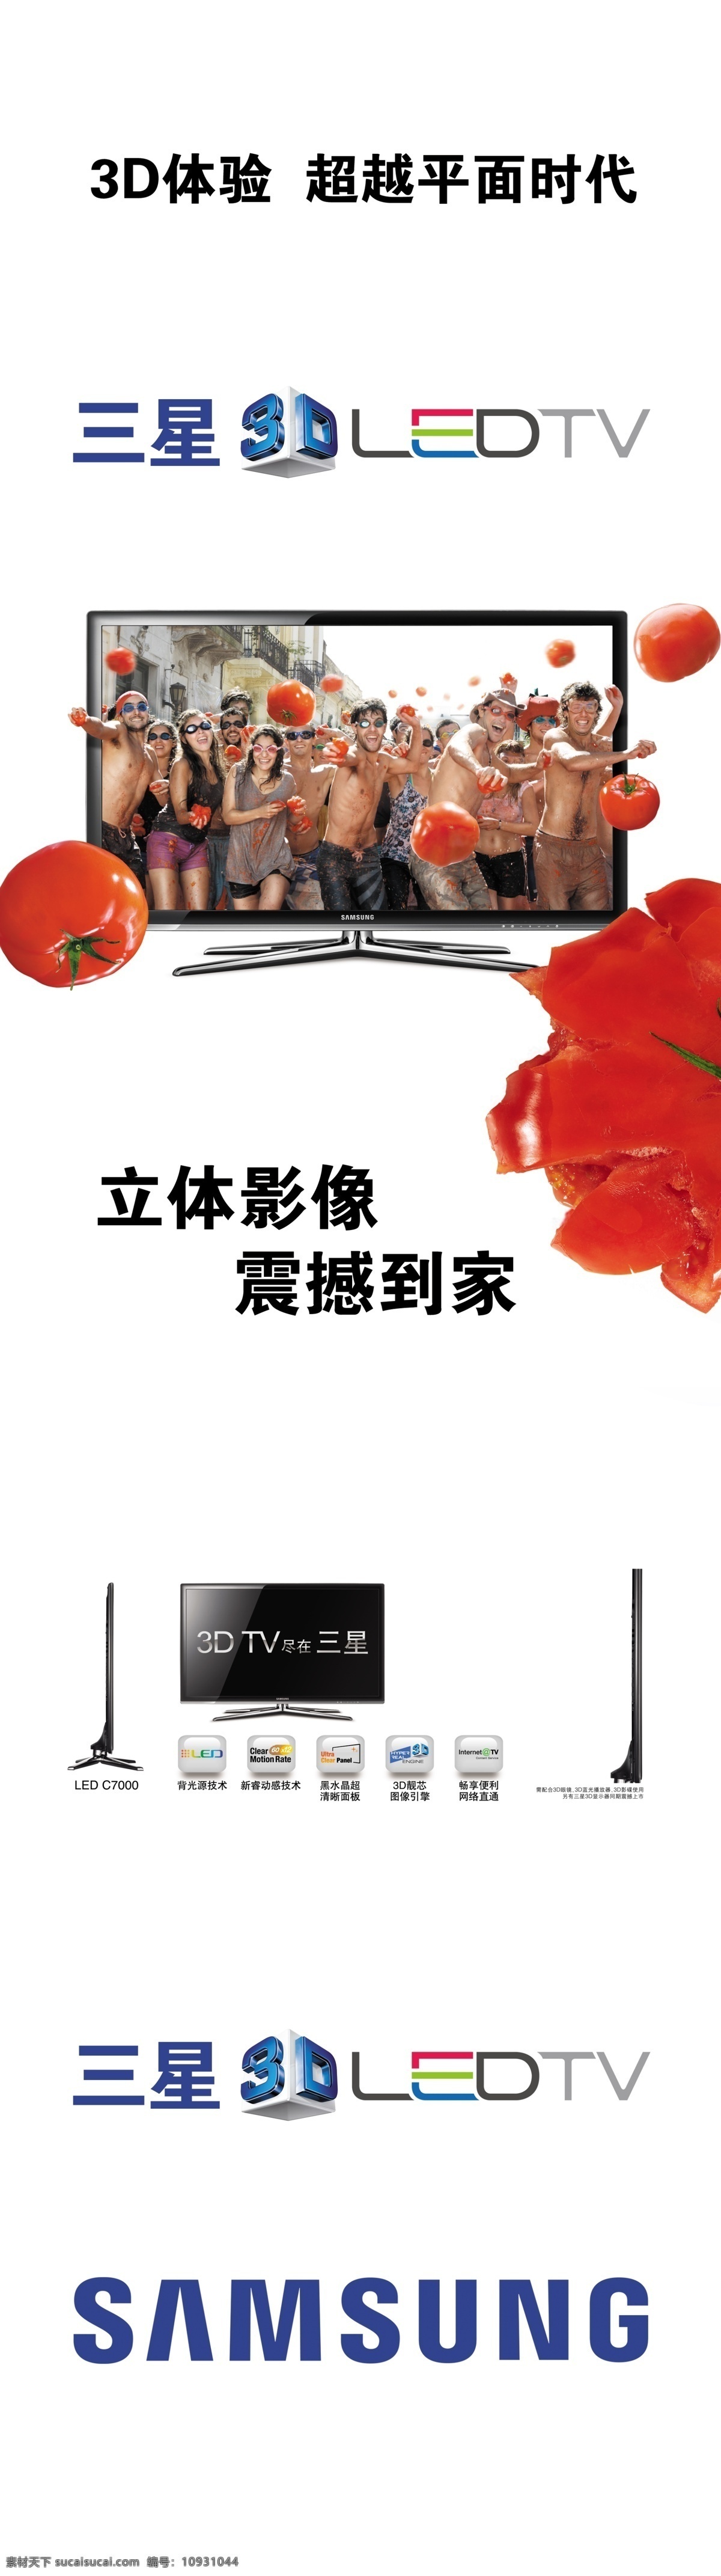 三星电视 西红柿 3d led 三星 番茄大战 广告设计模板 源文件